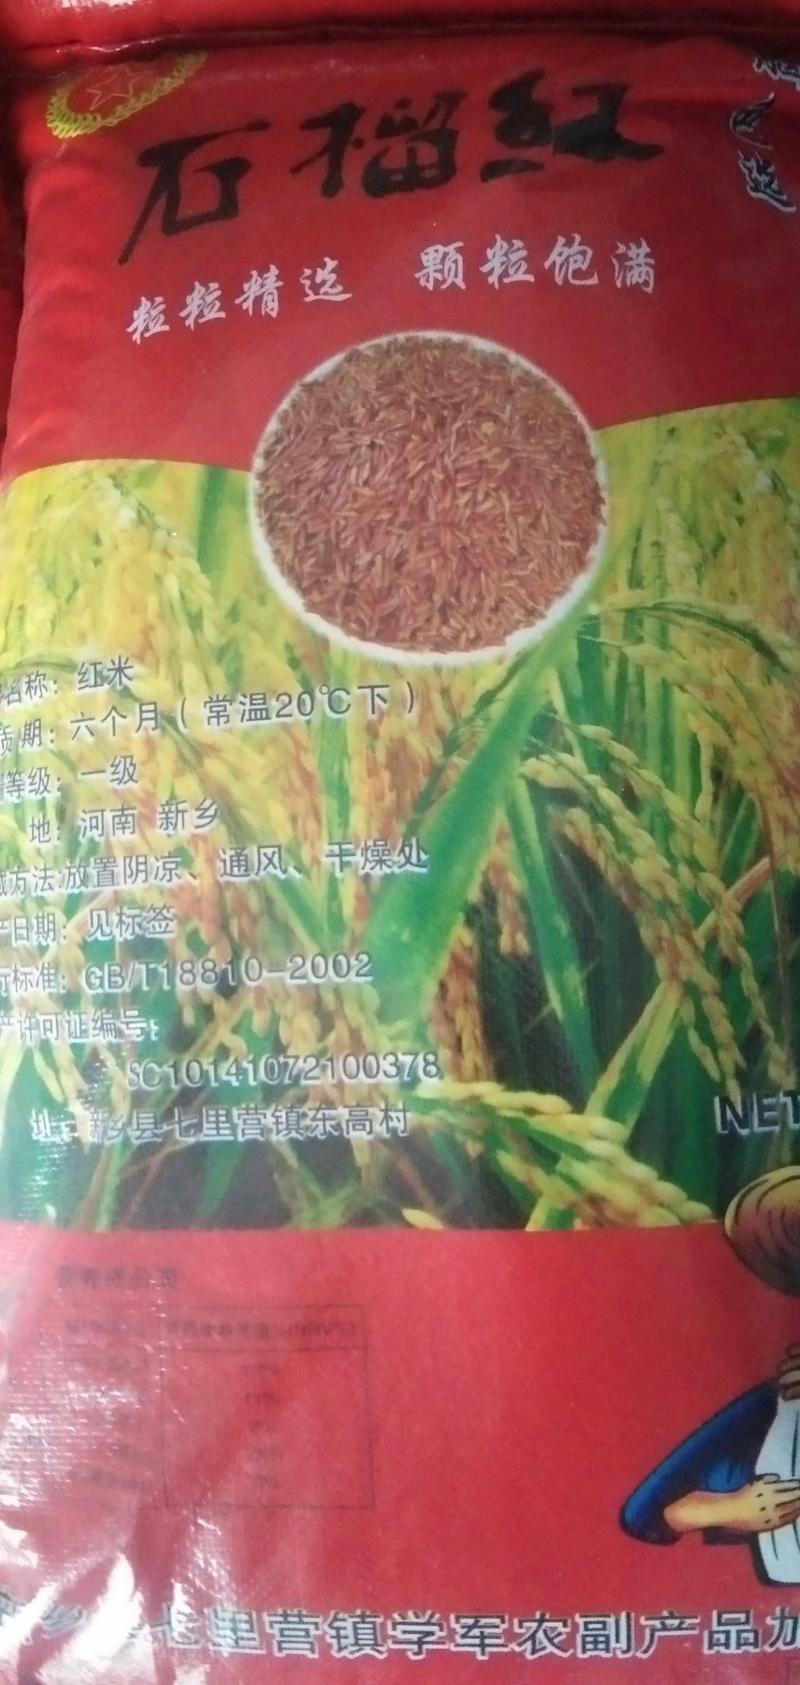 郑州市中牟万邦粮油市场食泉坊红米